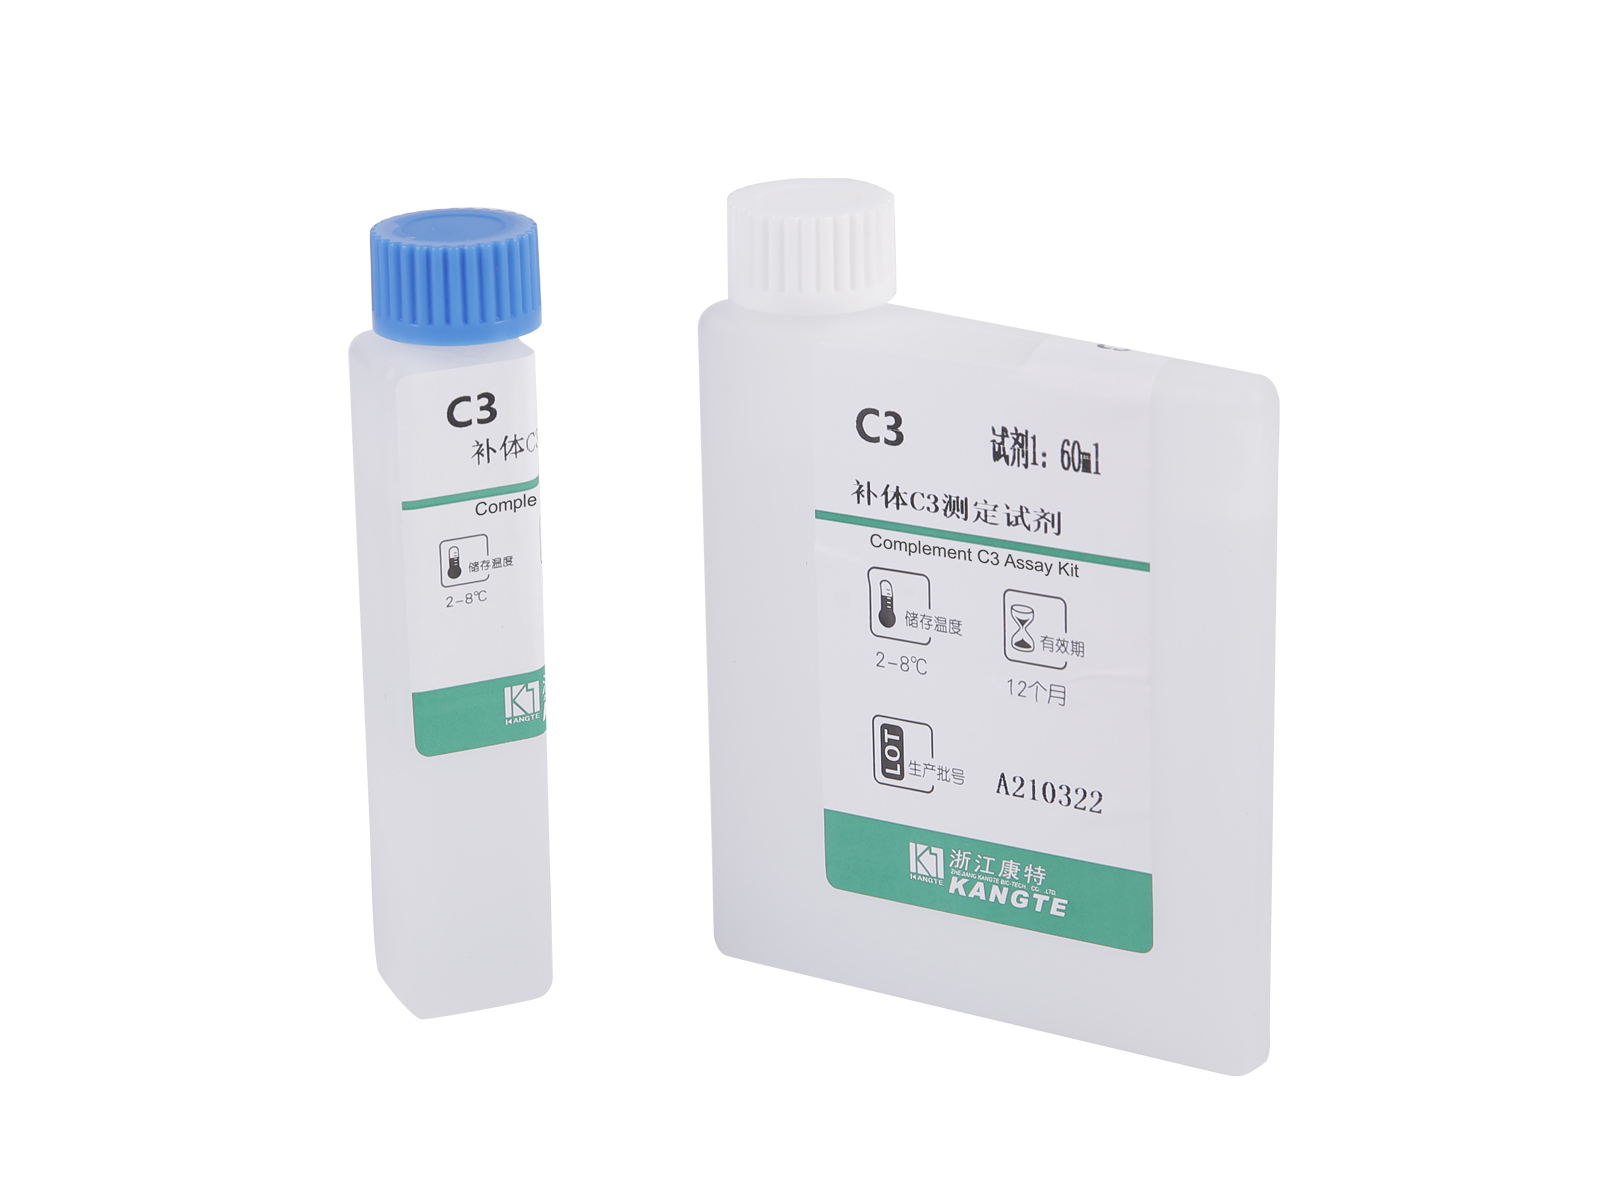 【C3】Complement C3 Assay Kit (Immunoturbidimetric Method)